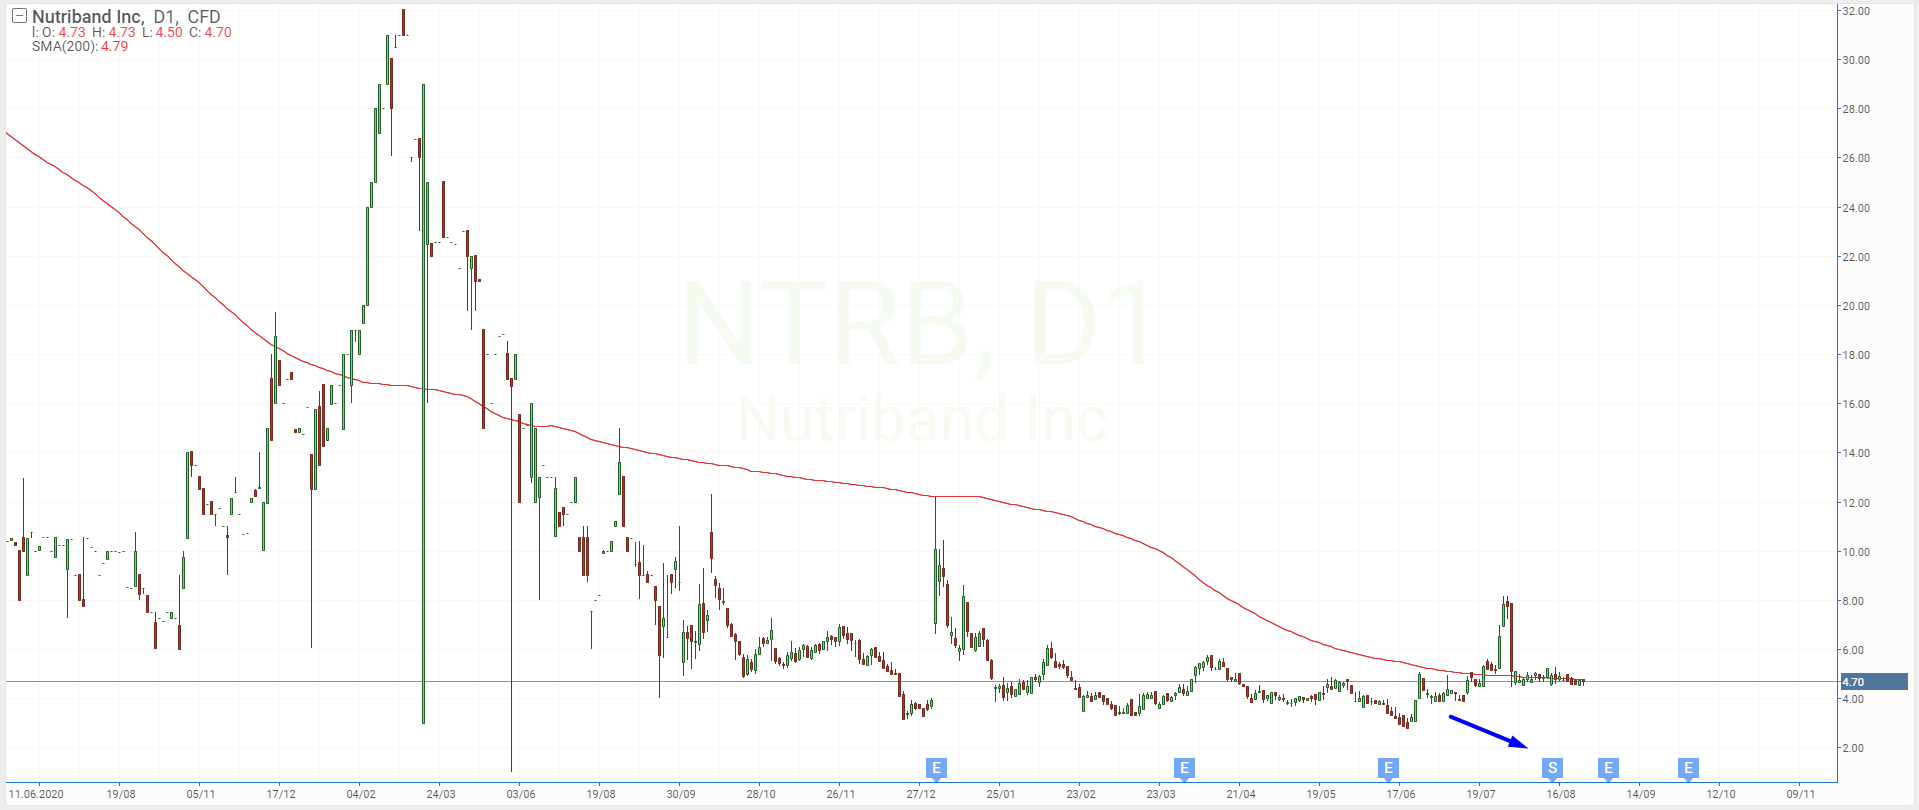 Reverse stock split of Nutriband